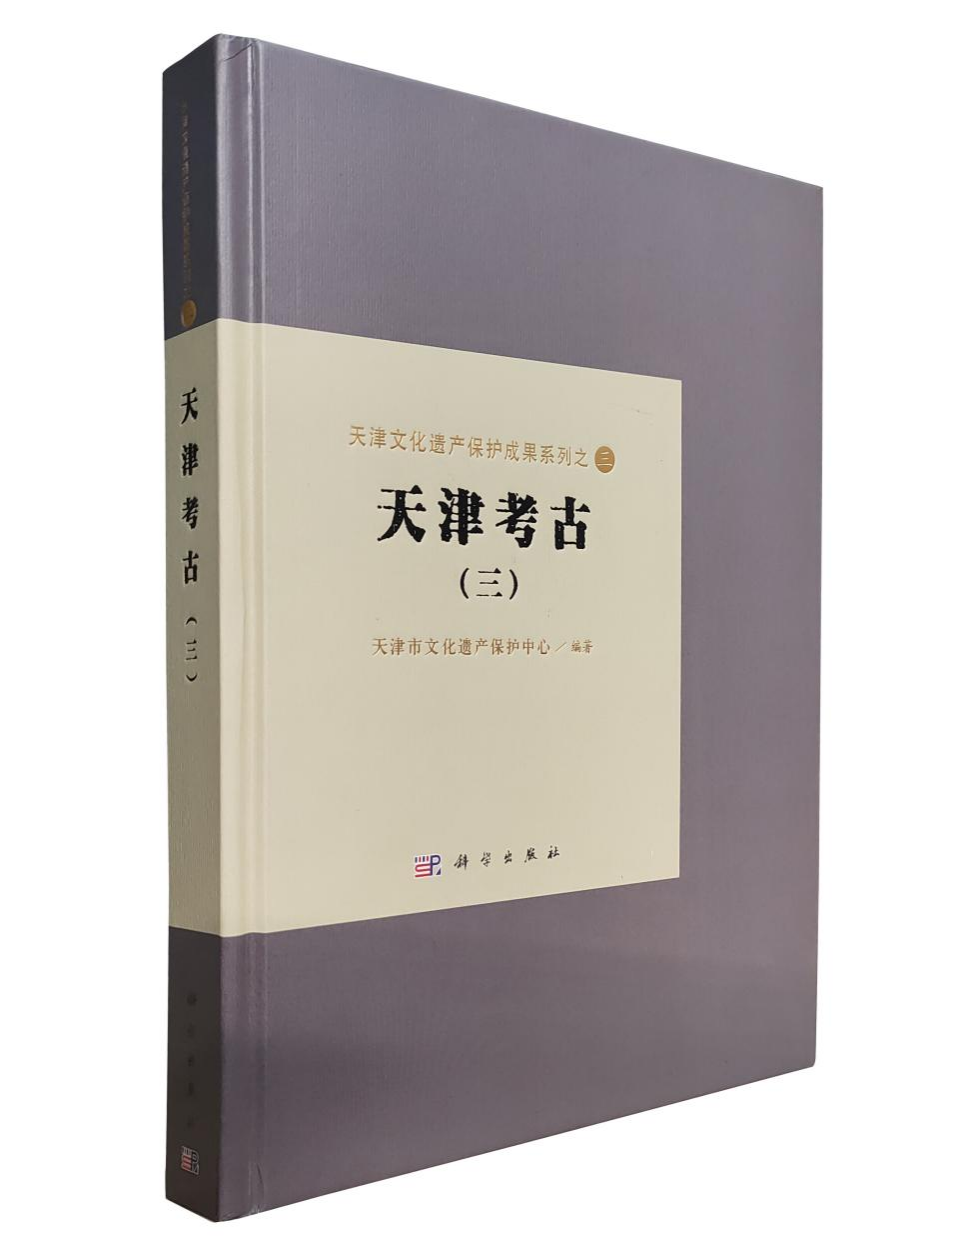 《天津考古》（三）出版